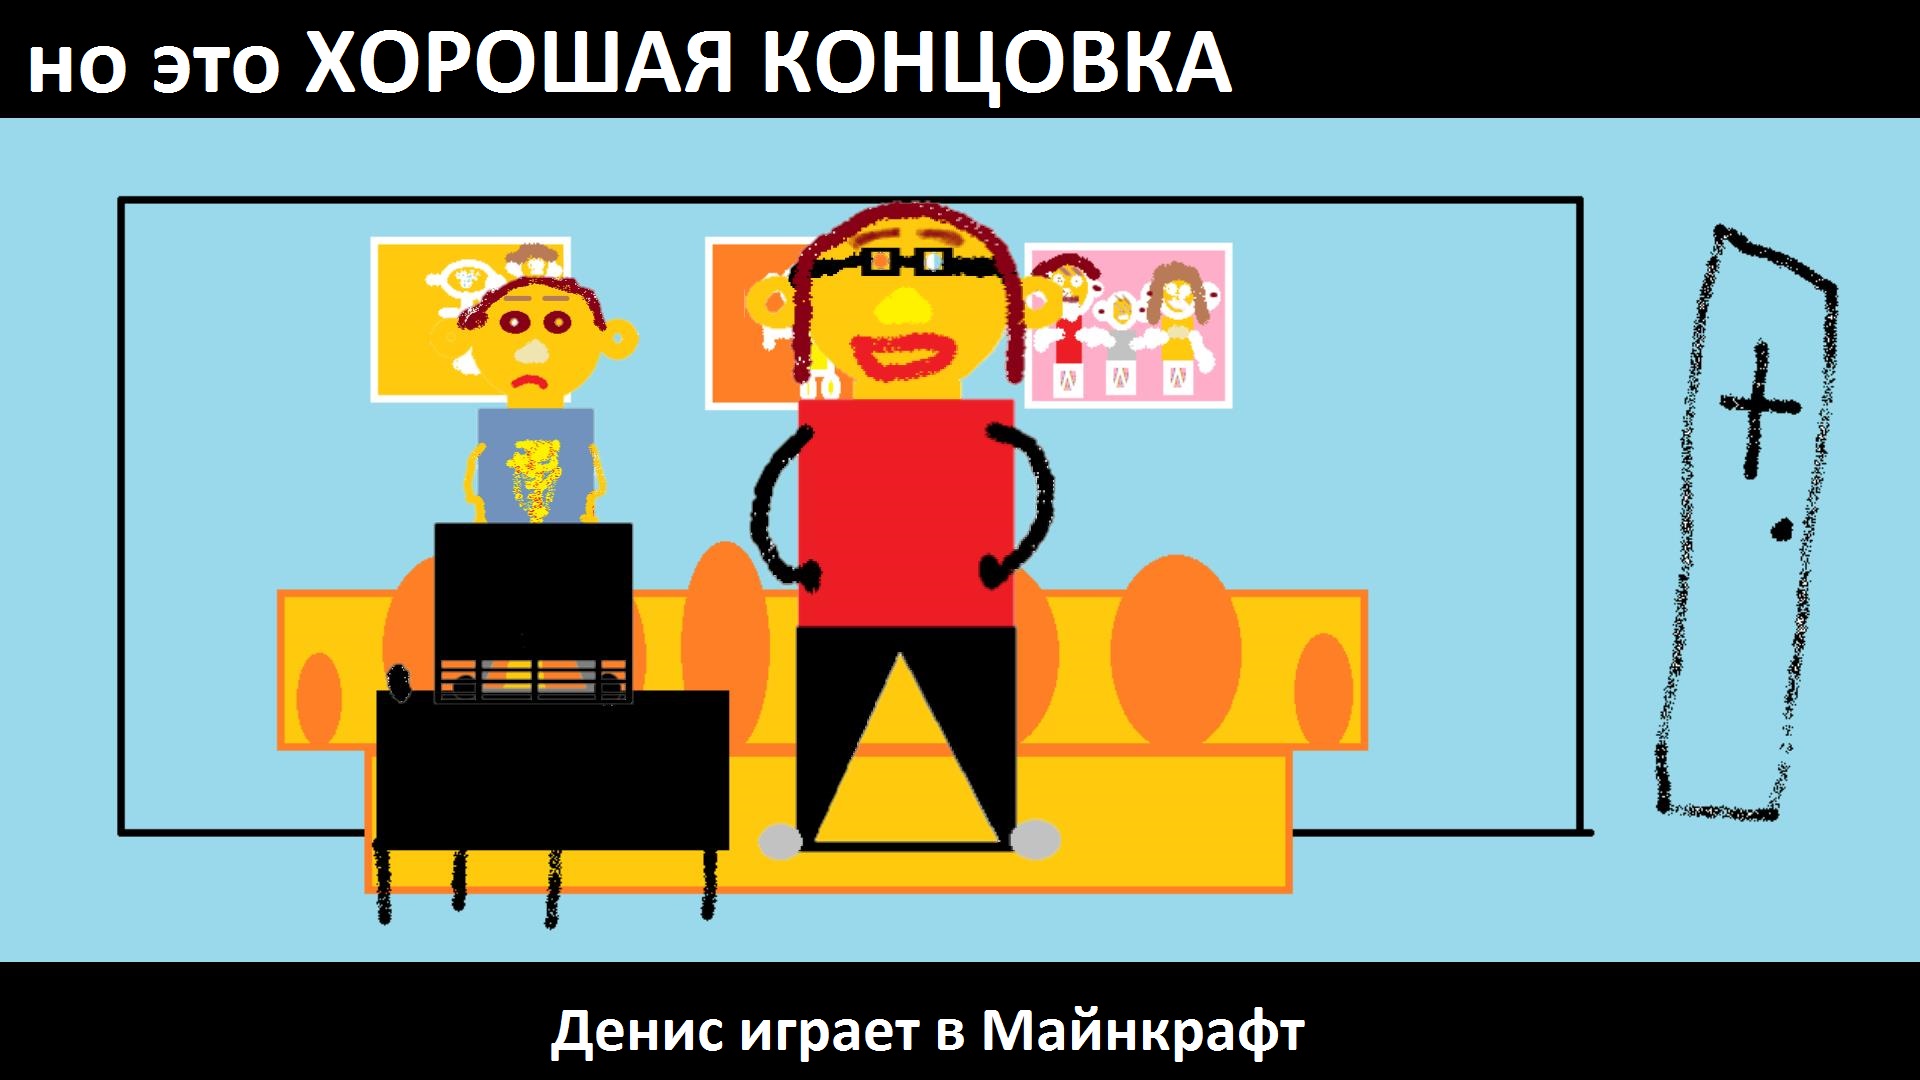 Анимация "Денис играет в Майнкрафт", но это ХОРОШАЯ КОНЦОВКА